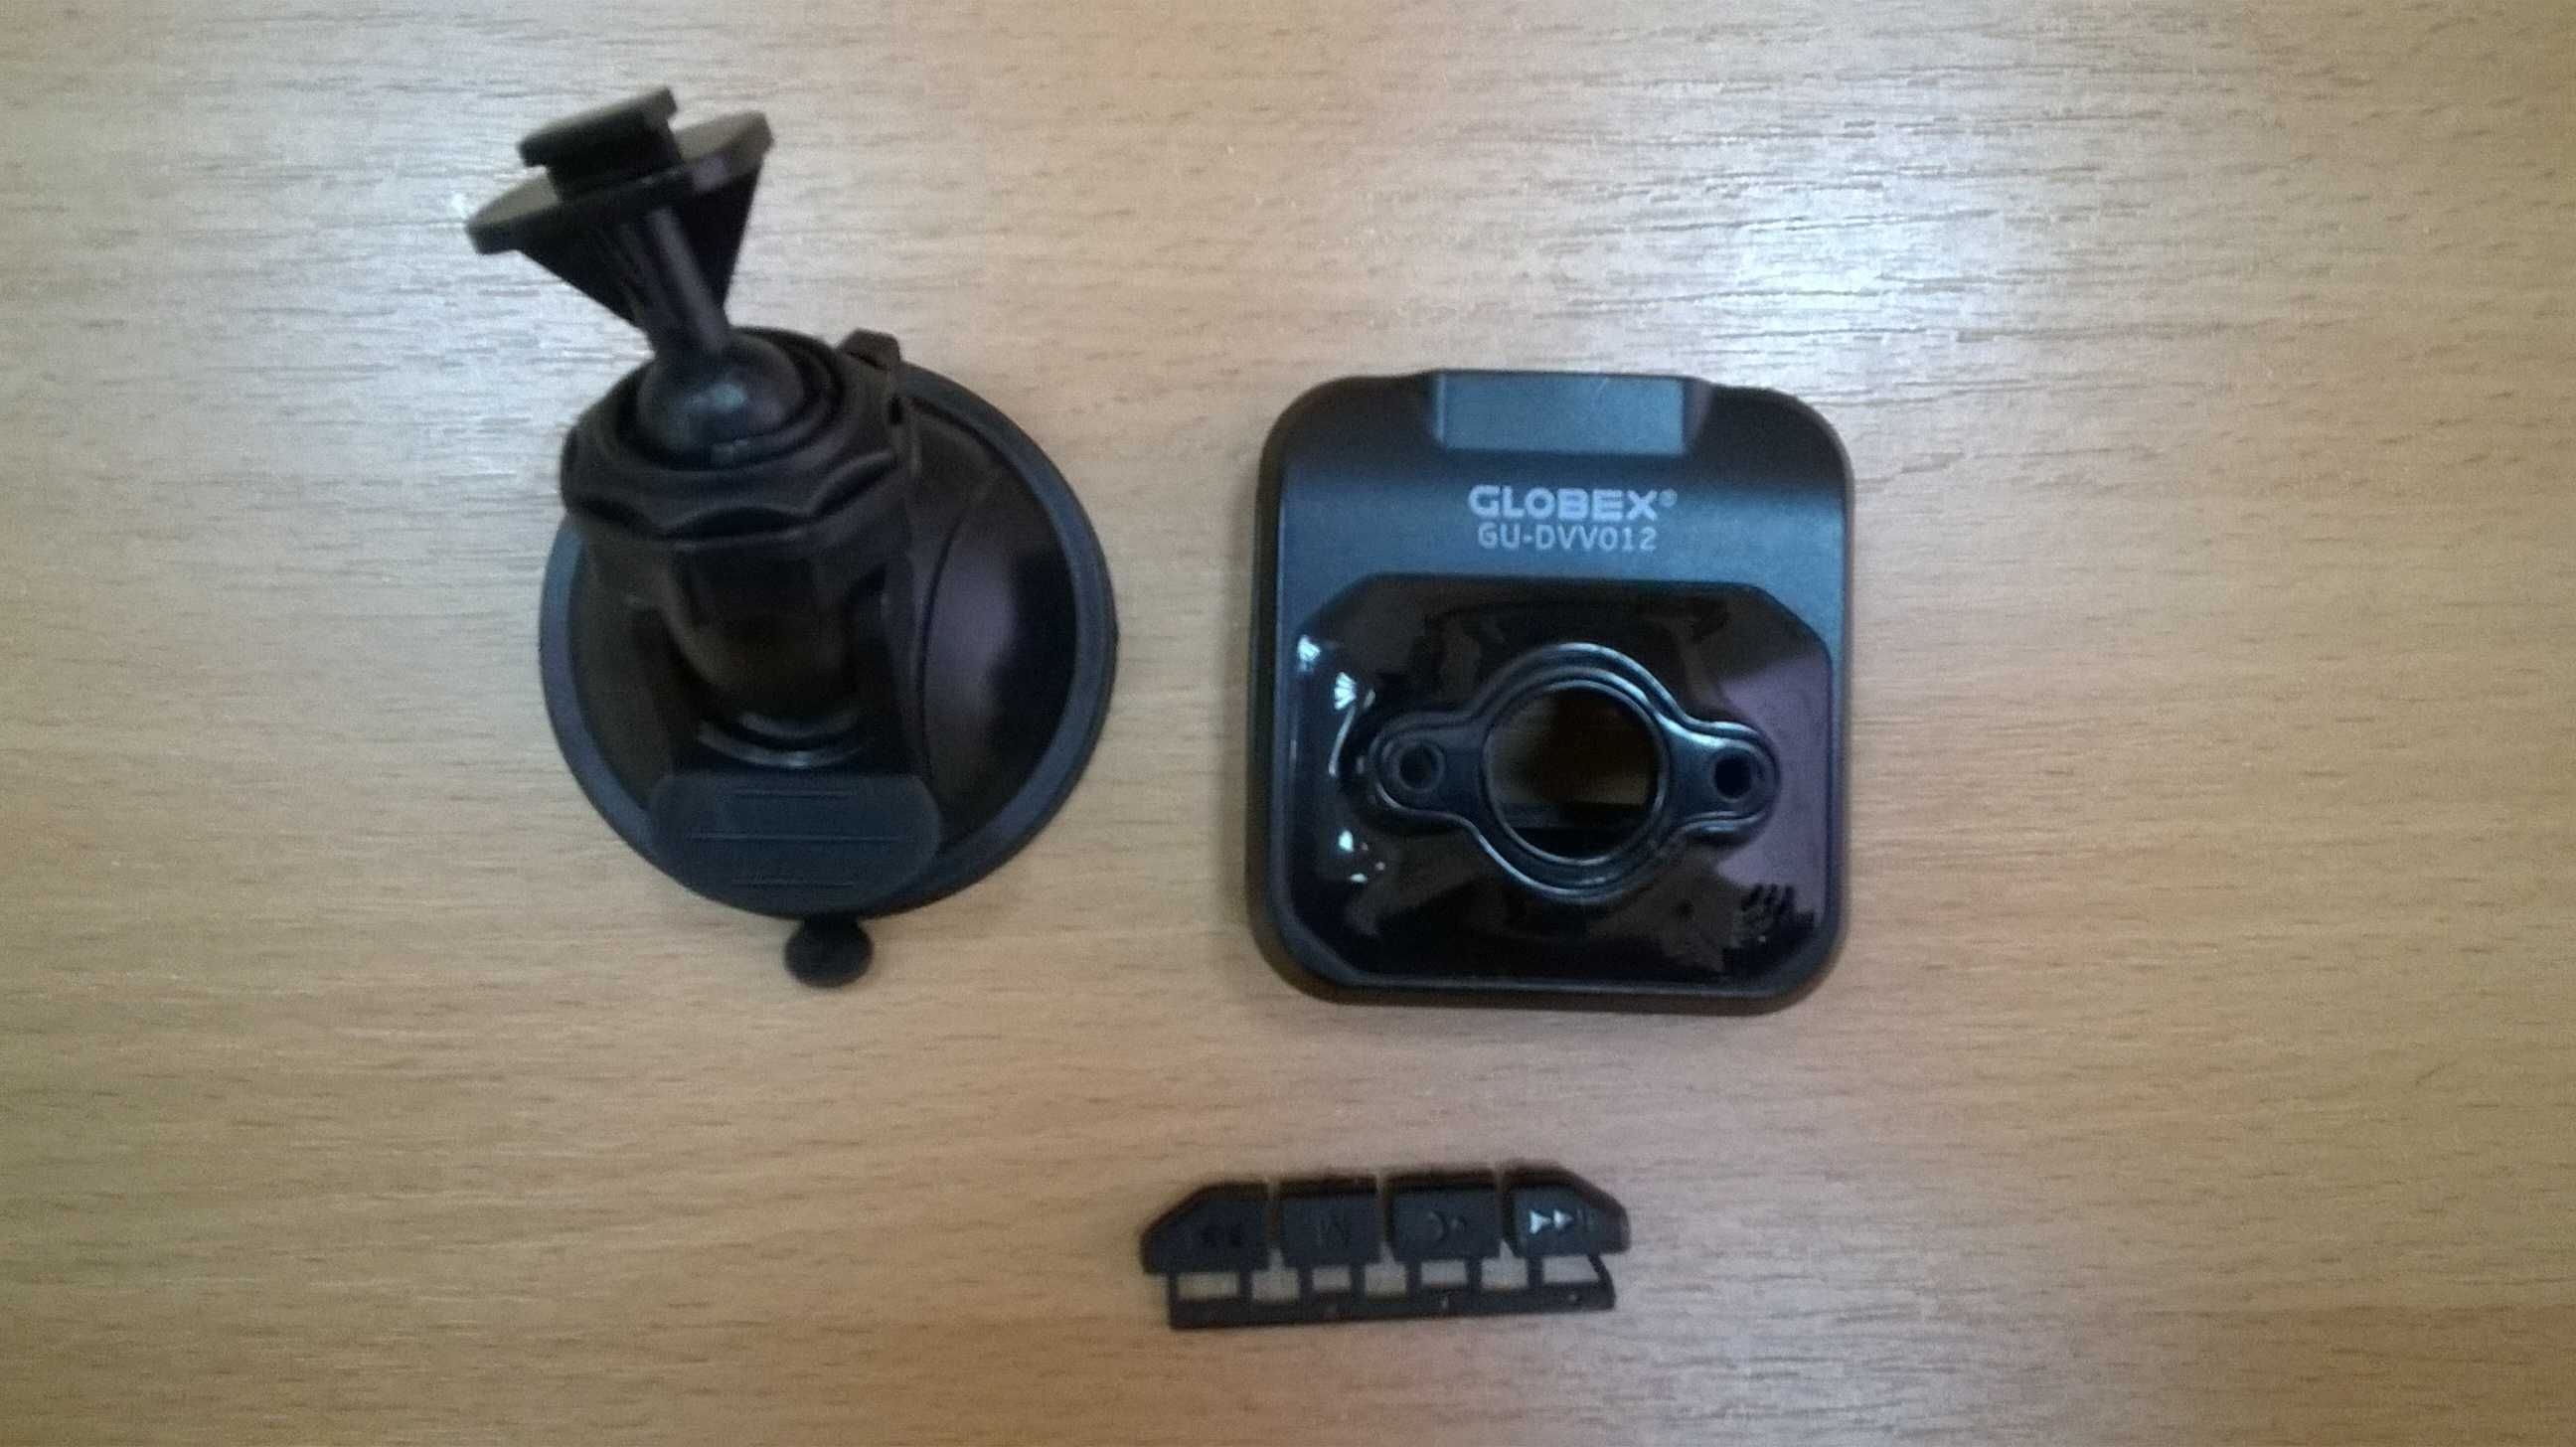 Видеорегистратор Globex GU-DVV012